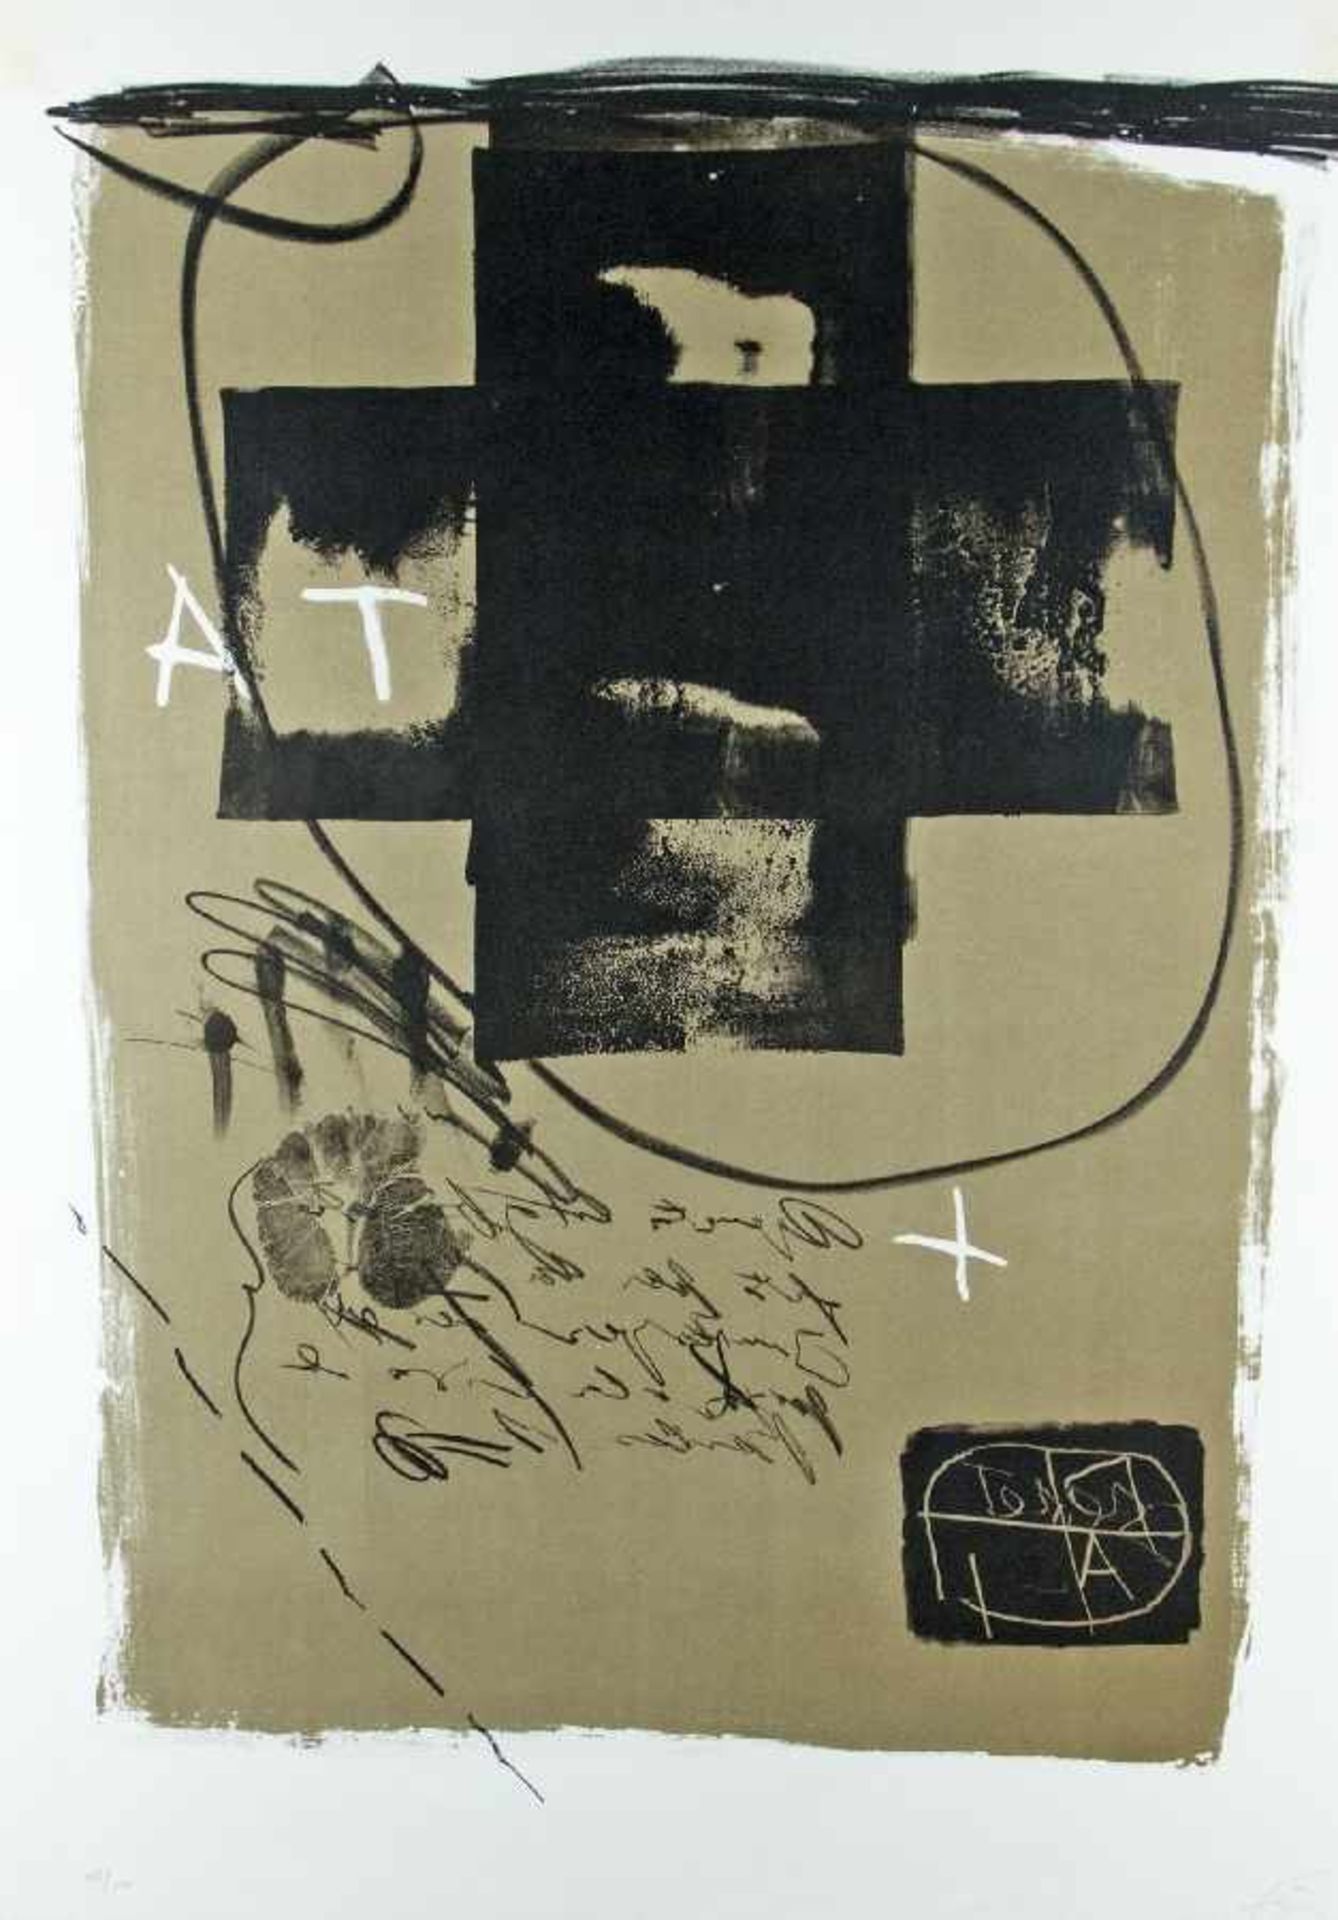 Antoni Tapies1923 Barcelona - 2012Gilt als der wichtigste spanische Maler und Grafiker des Informel;